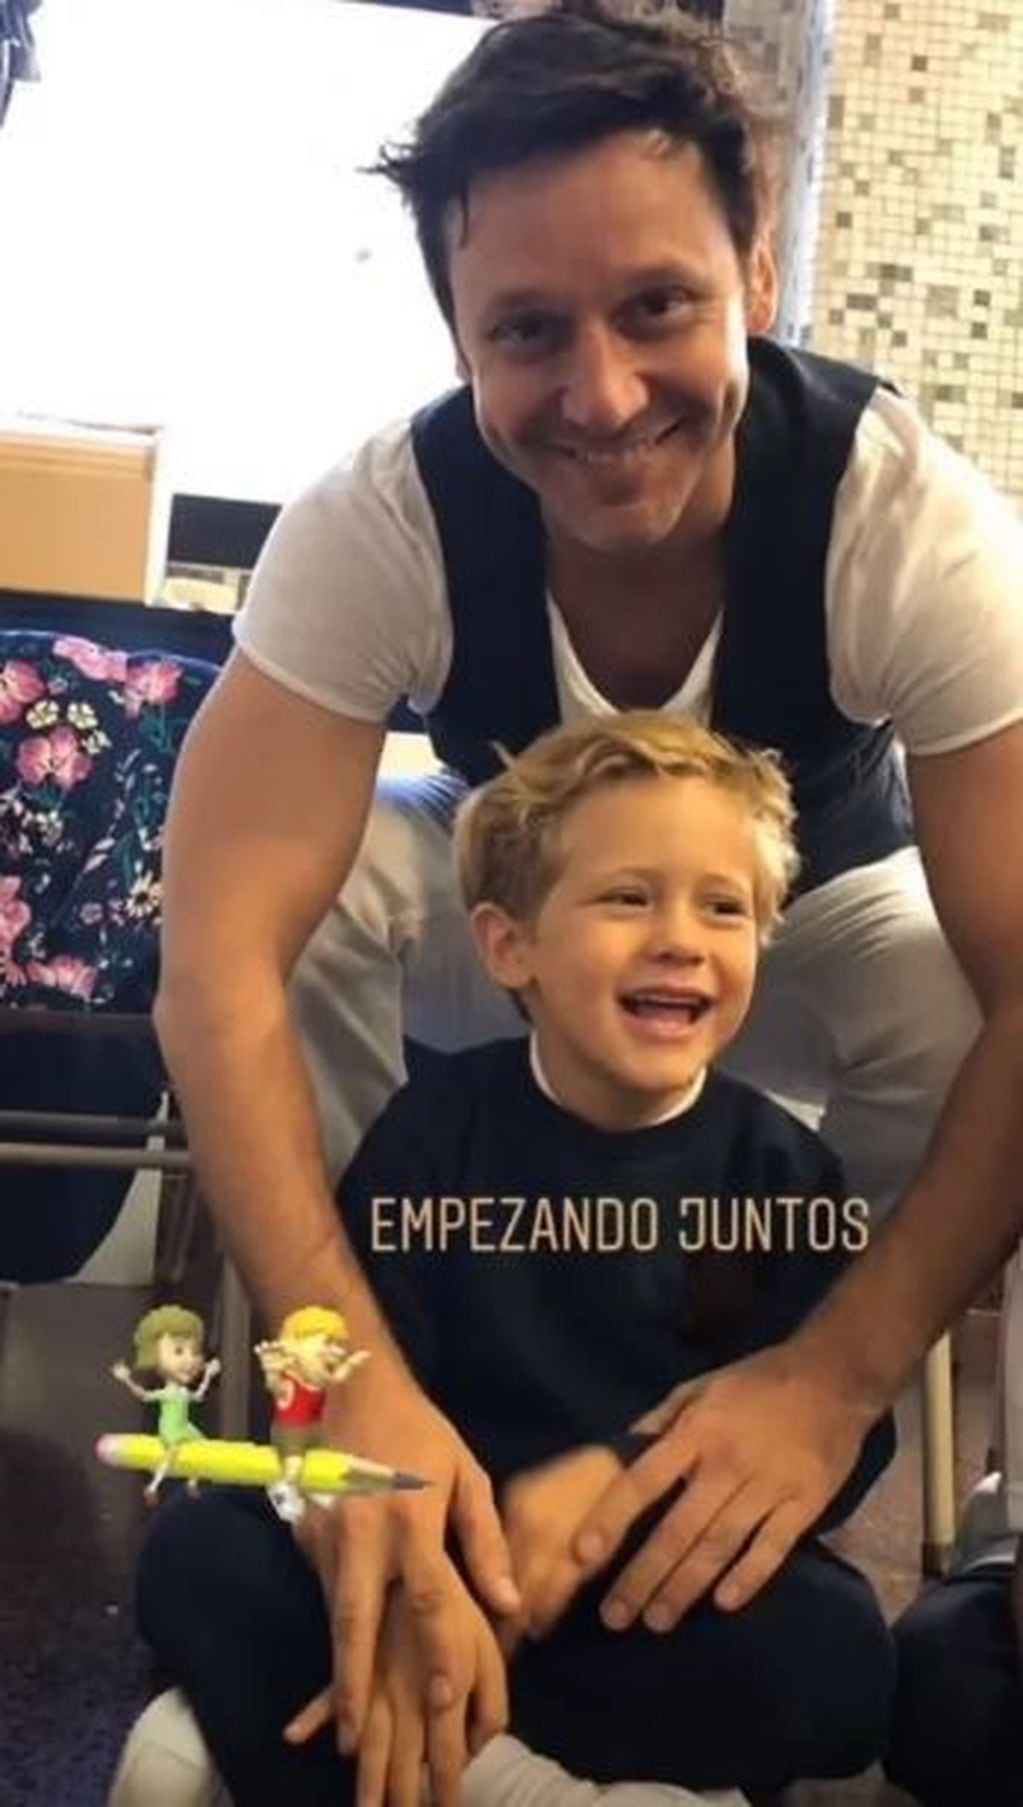 Pampita y Benjamín Vicuña coincidieron en el primer día de clases de sus hijos. (Foto: Instagram)